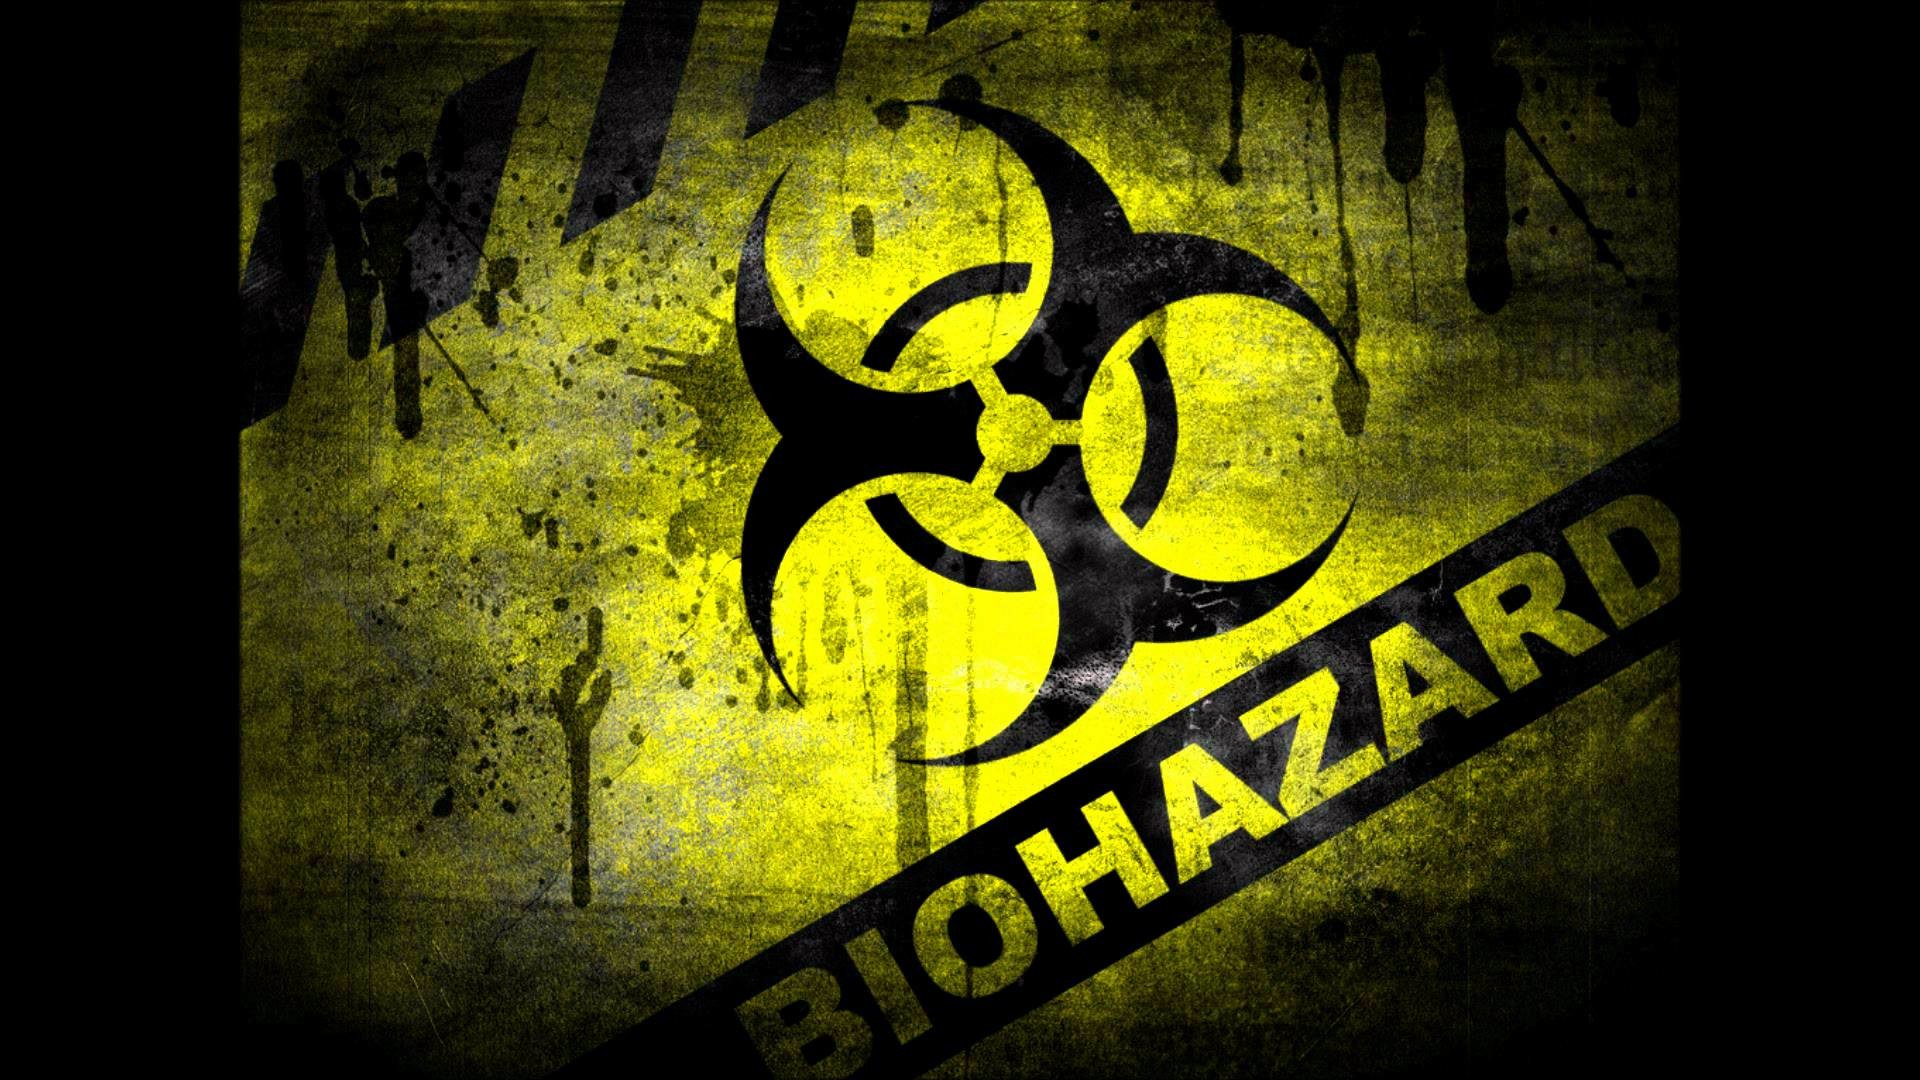 1920x1080 Wallpapers For > Zombie Biohazard Wallpaper